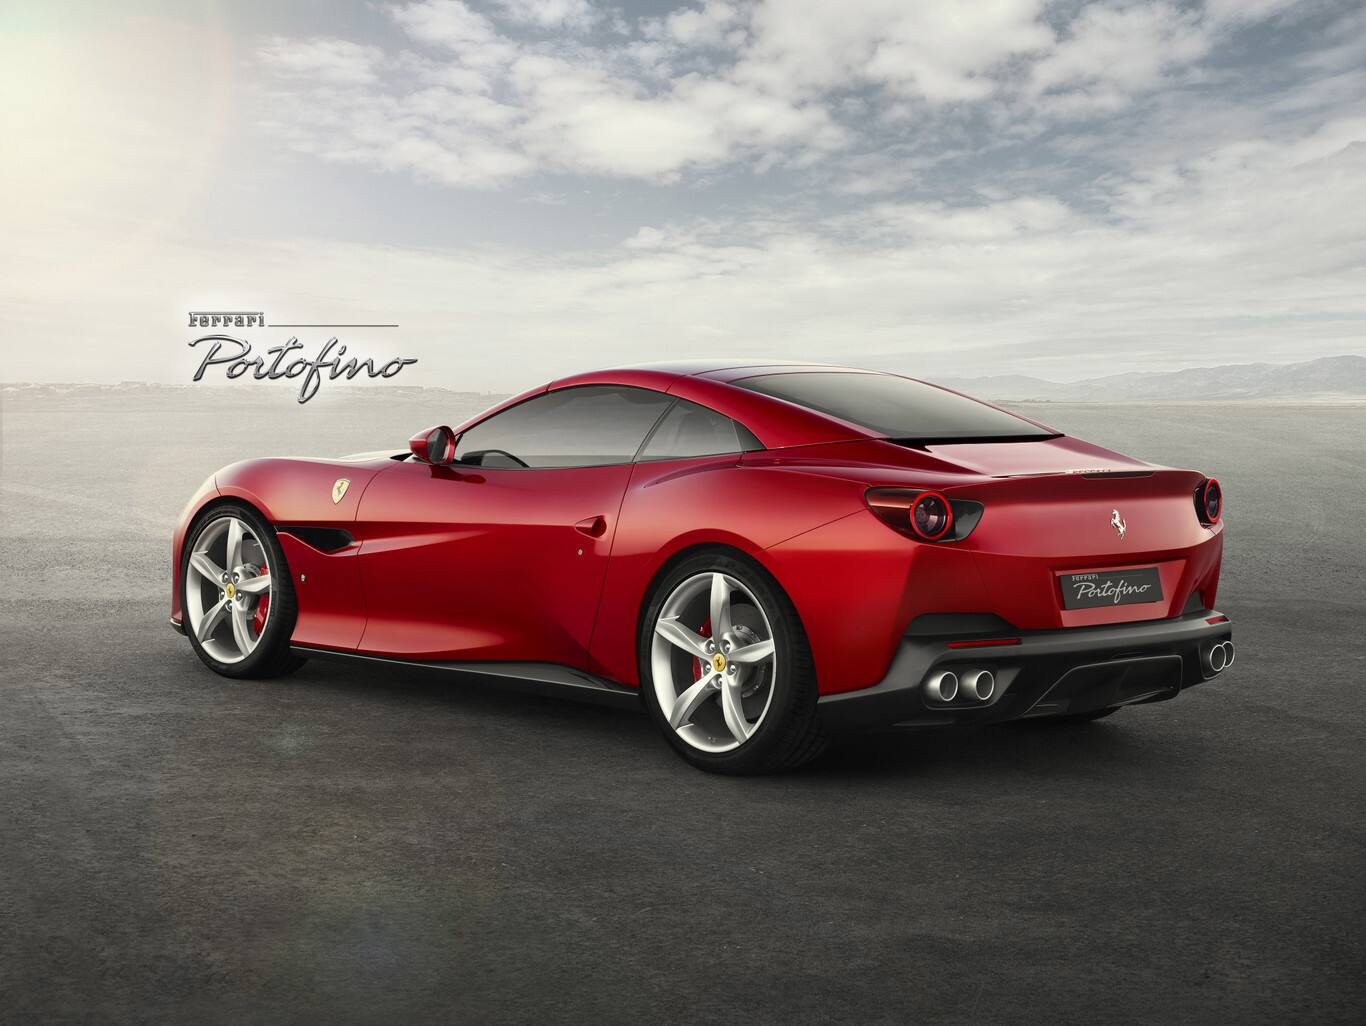 Ferrari Portofino 2018 on Indian roads soon